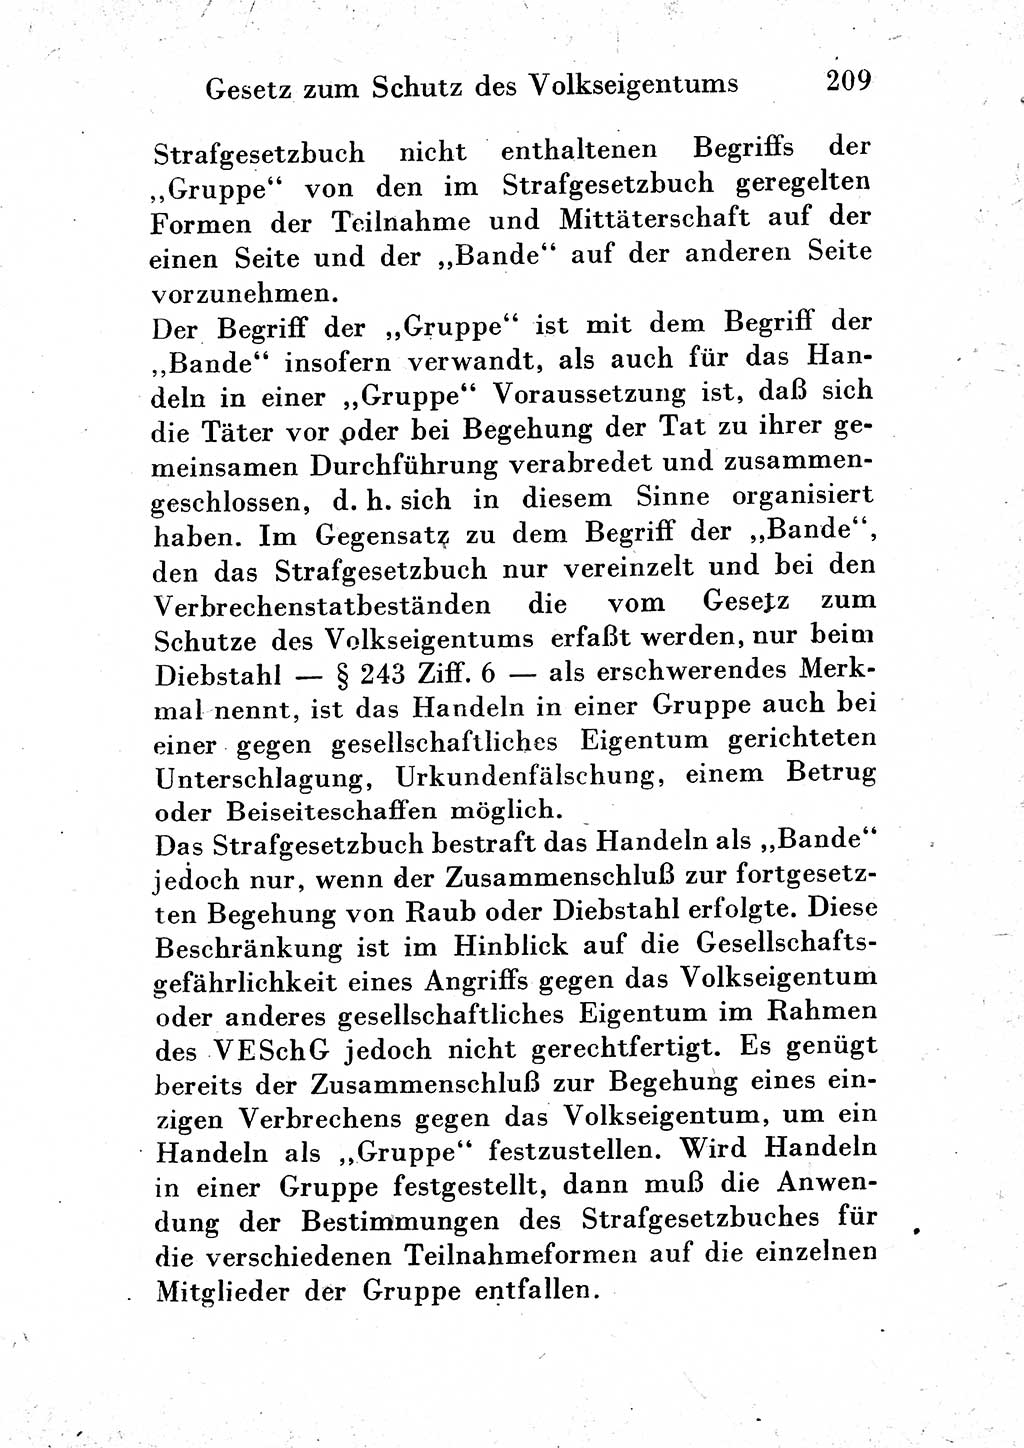 Strafgesetzbuch (StGB) und andere Strafgesetze [Deutsche Demokratische Republik (DDR)] 1954, Seite 209 (StGB Strafges. DDR 1954, S. 209)